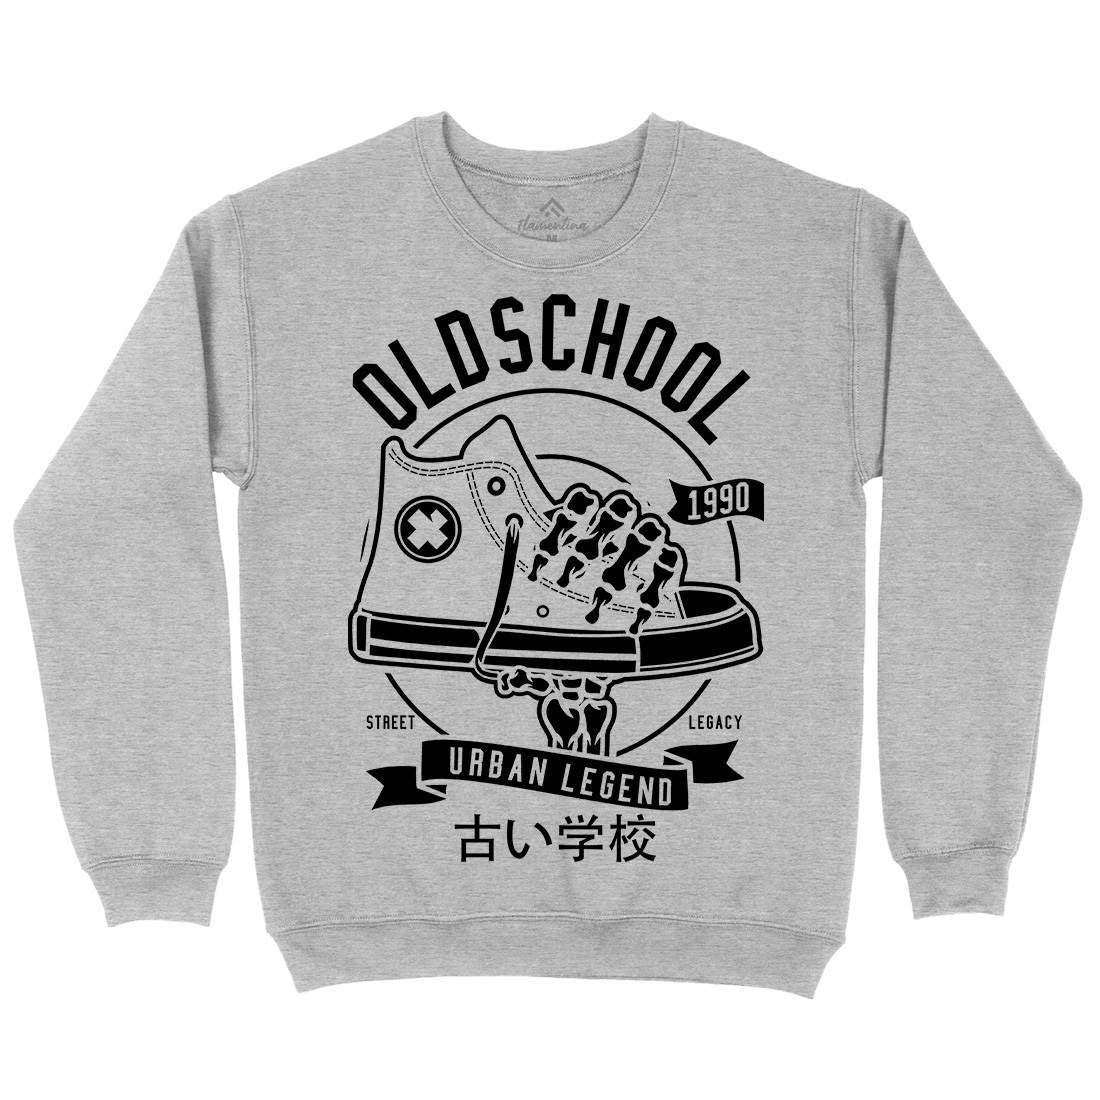 Old School Kids Crew Neck Sweatshirt Retro B591